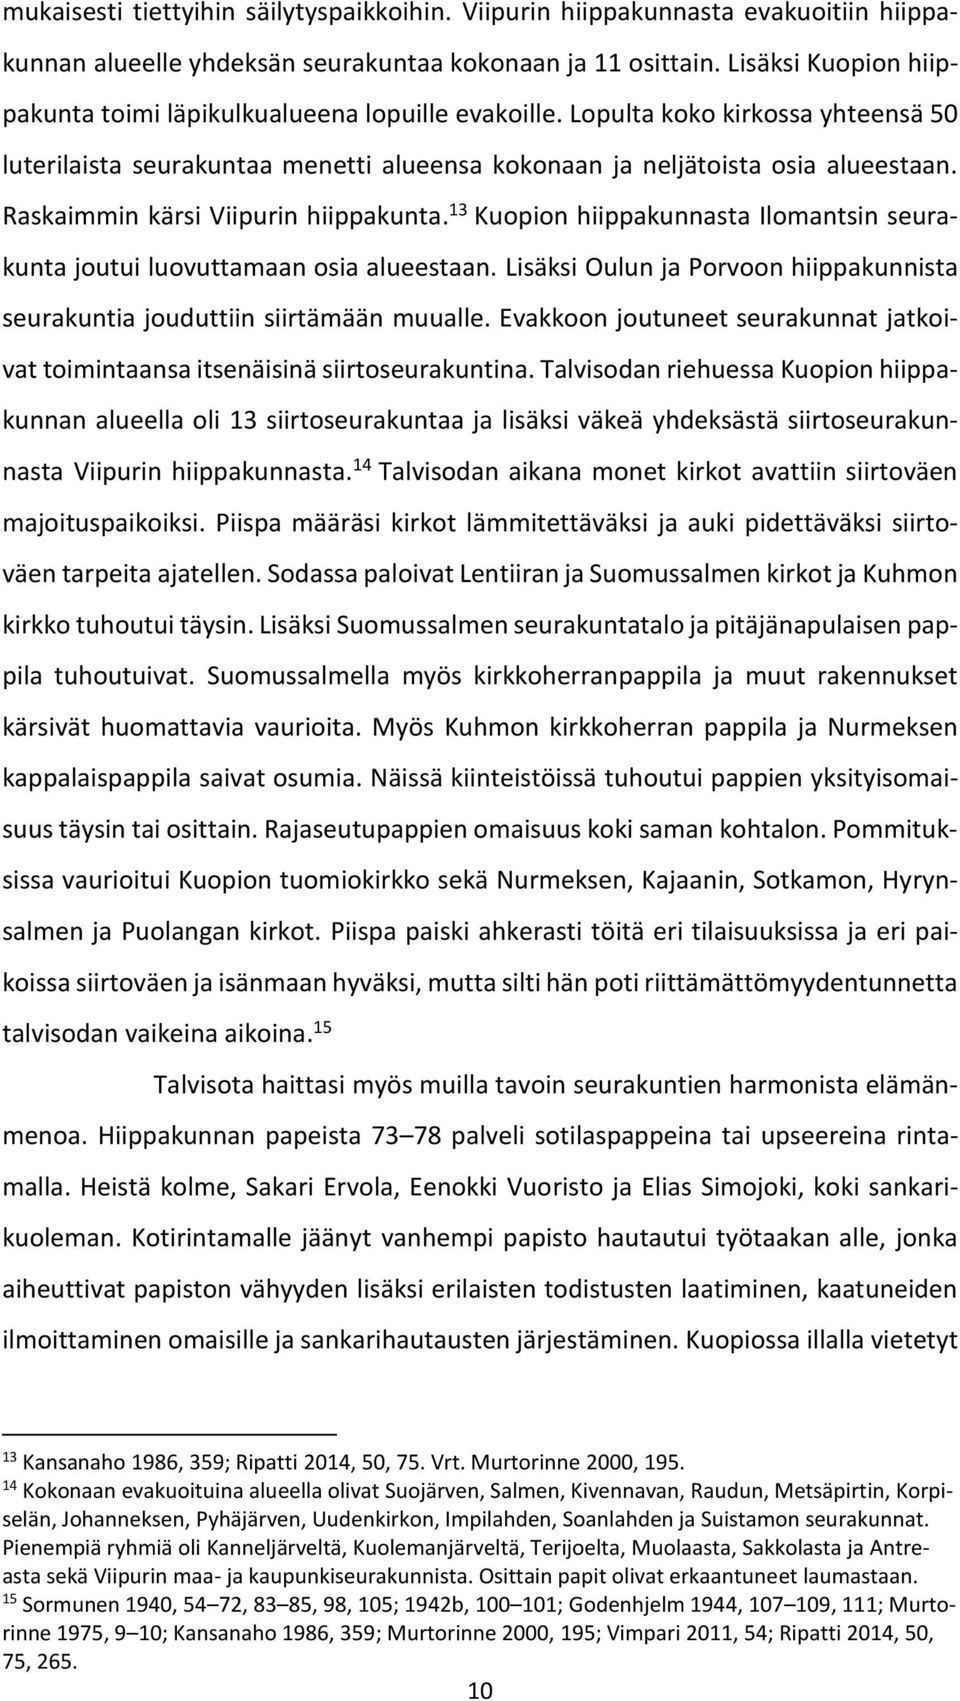 Raskaimmin kärsi Viipurin hiippakunta. 13 Kuopion hiippakunnasta Ilomantsin seurakunta joutui luovuttamaan osia alueestaan.